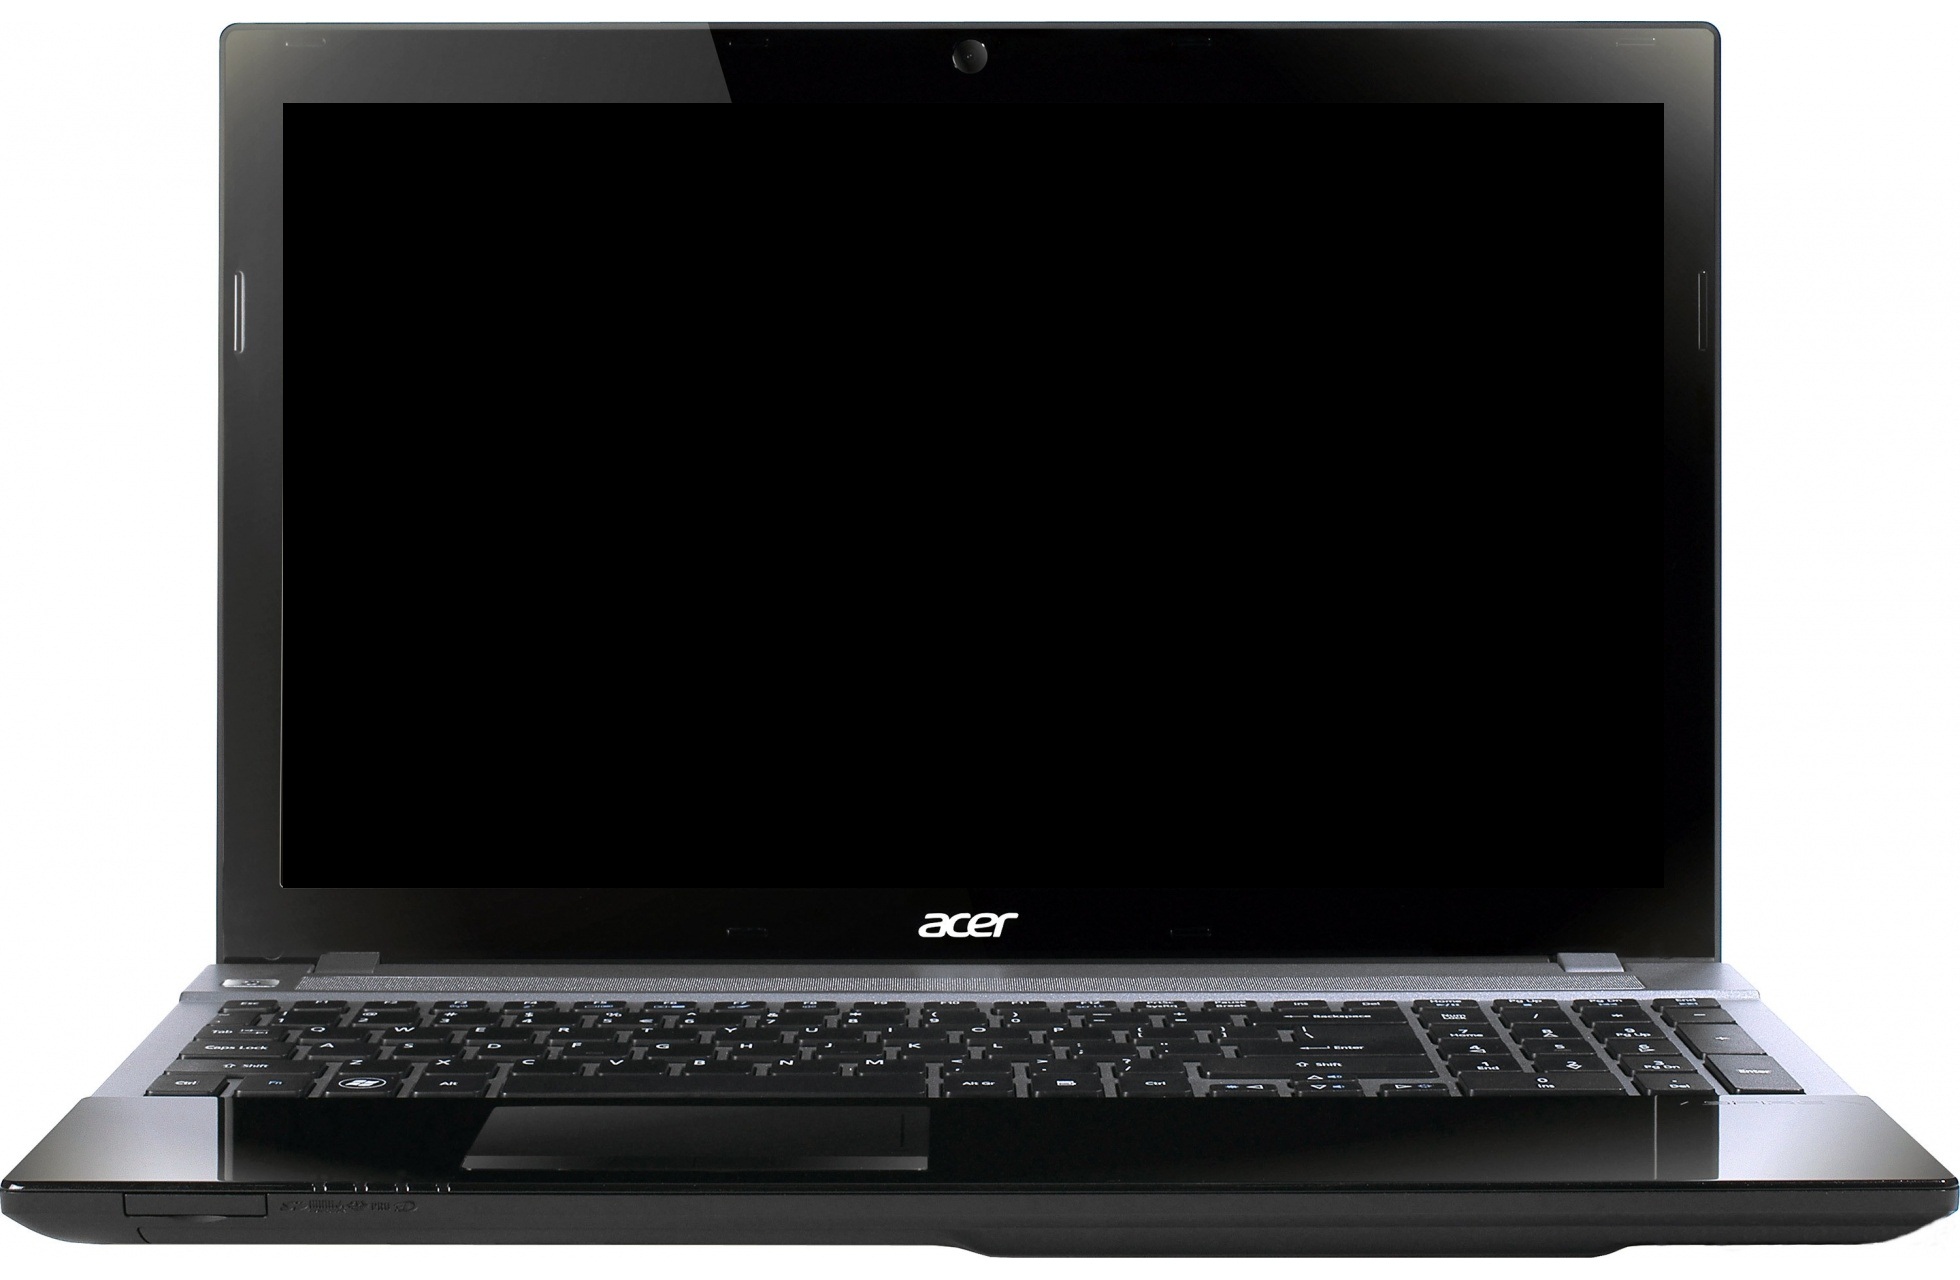 Ноутбук Acer V3 551g Купить